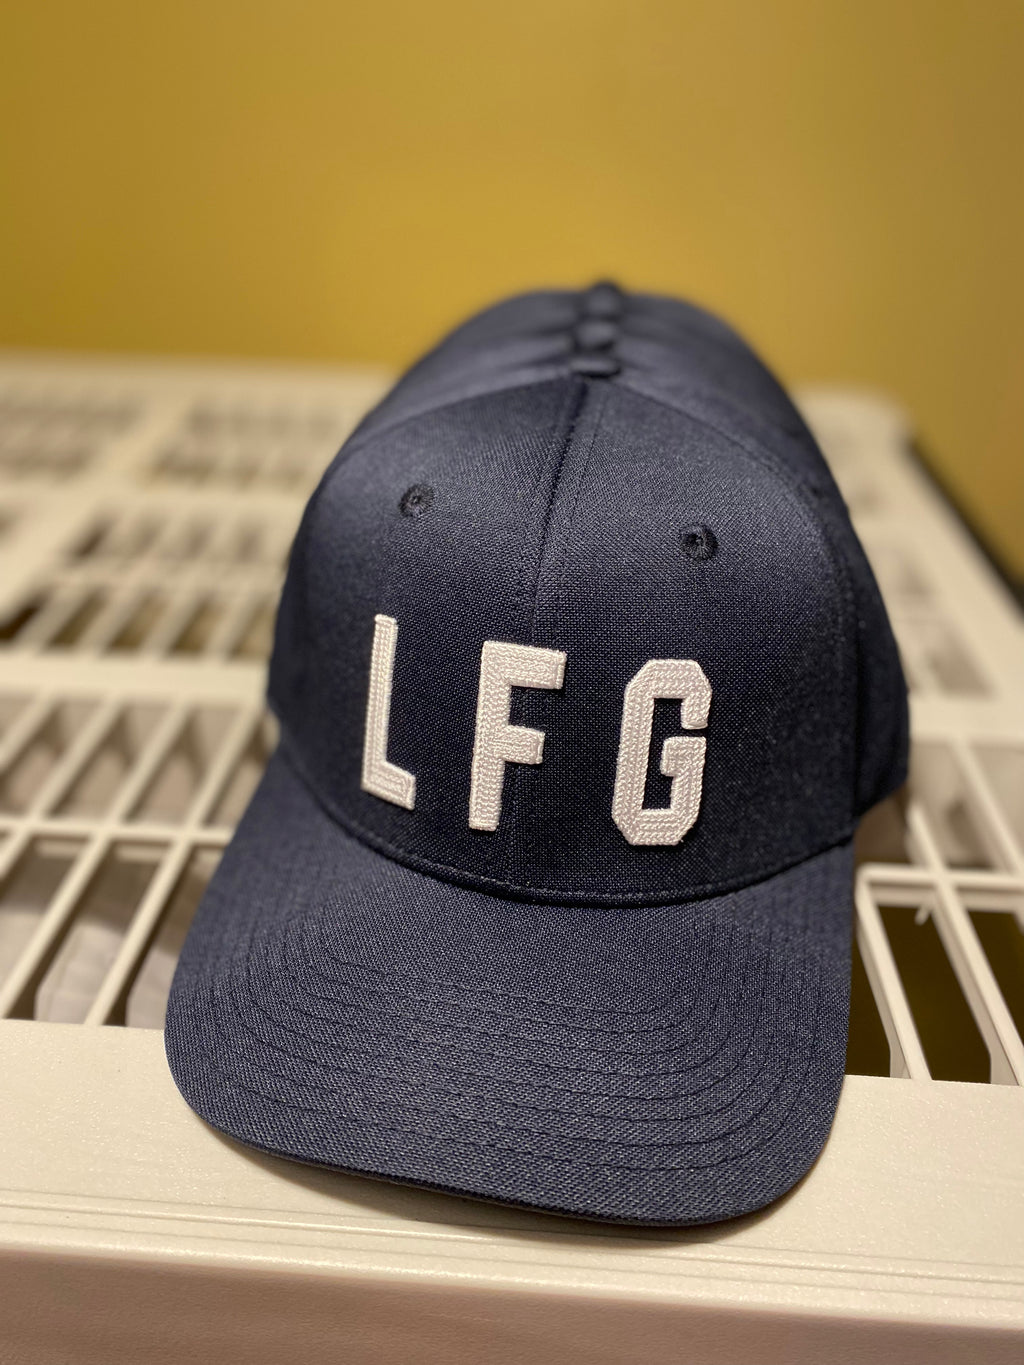 LFG Raised Chainstitched Hat